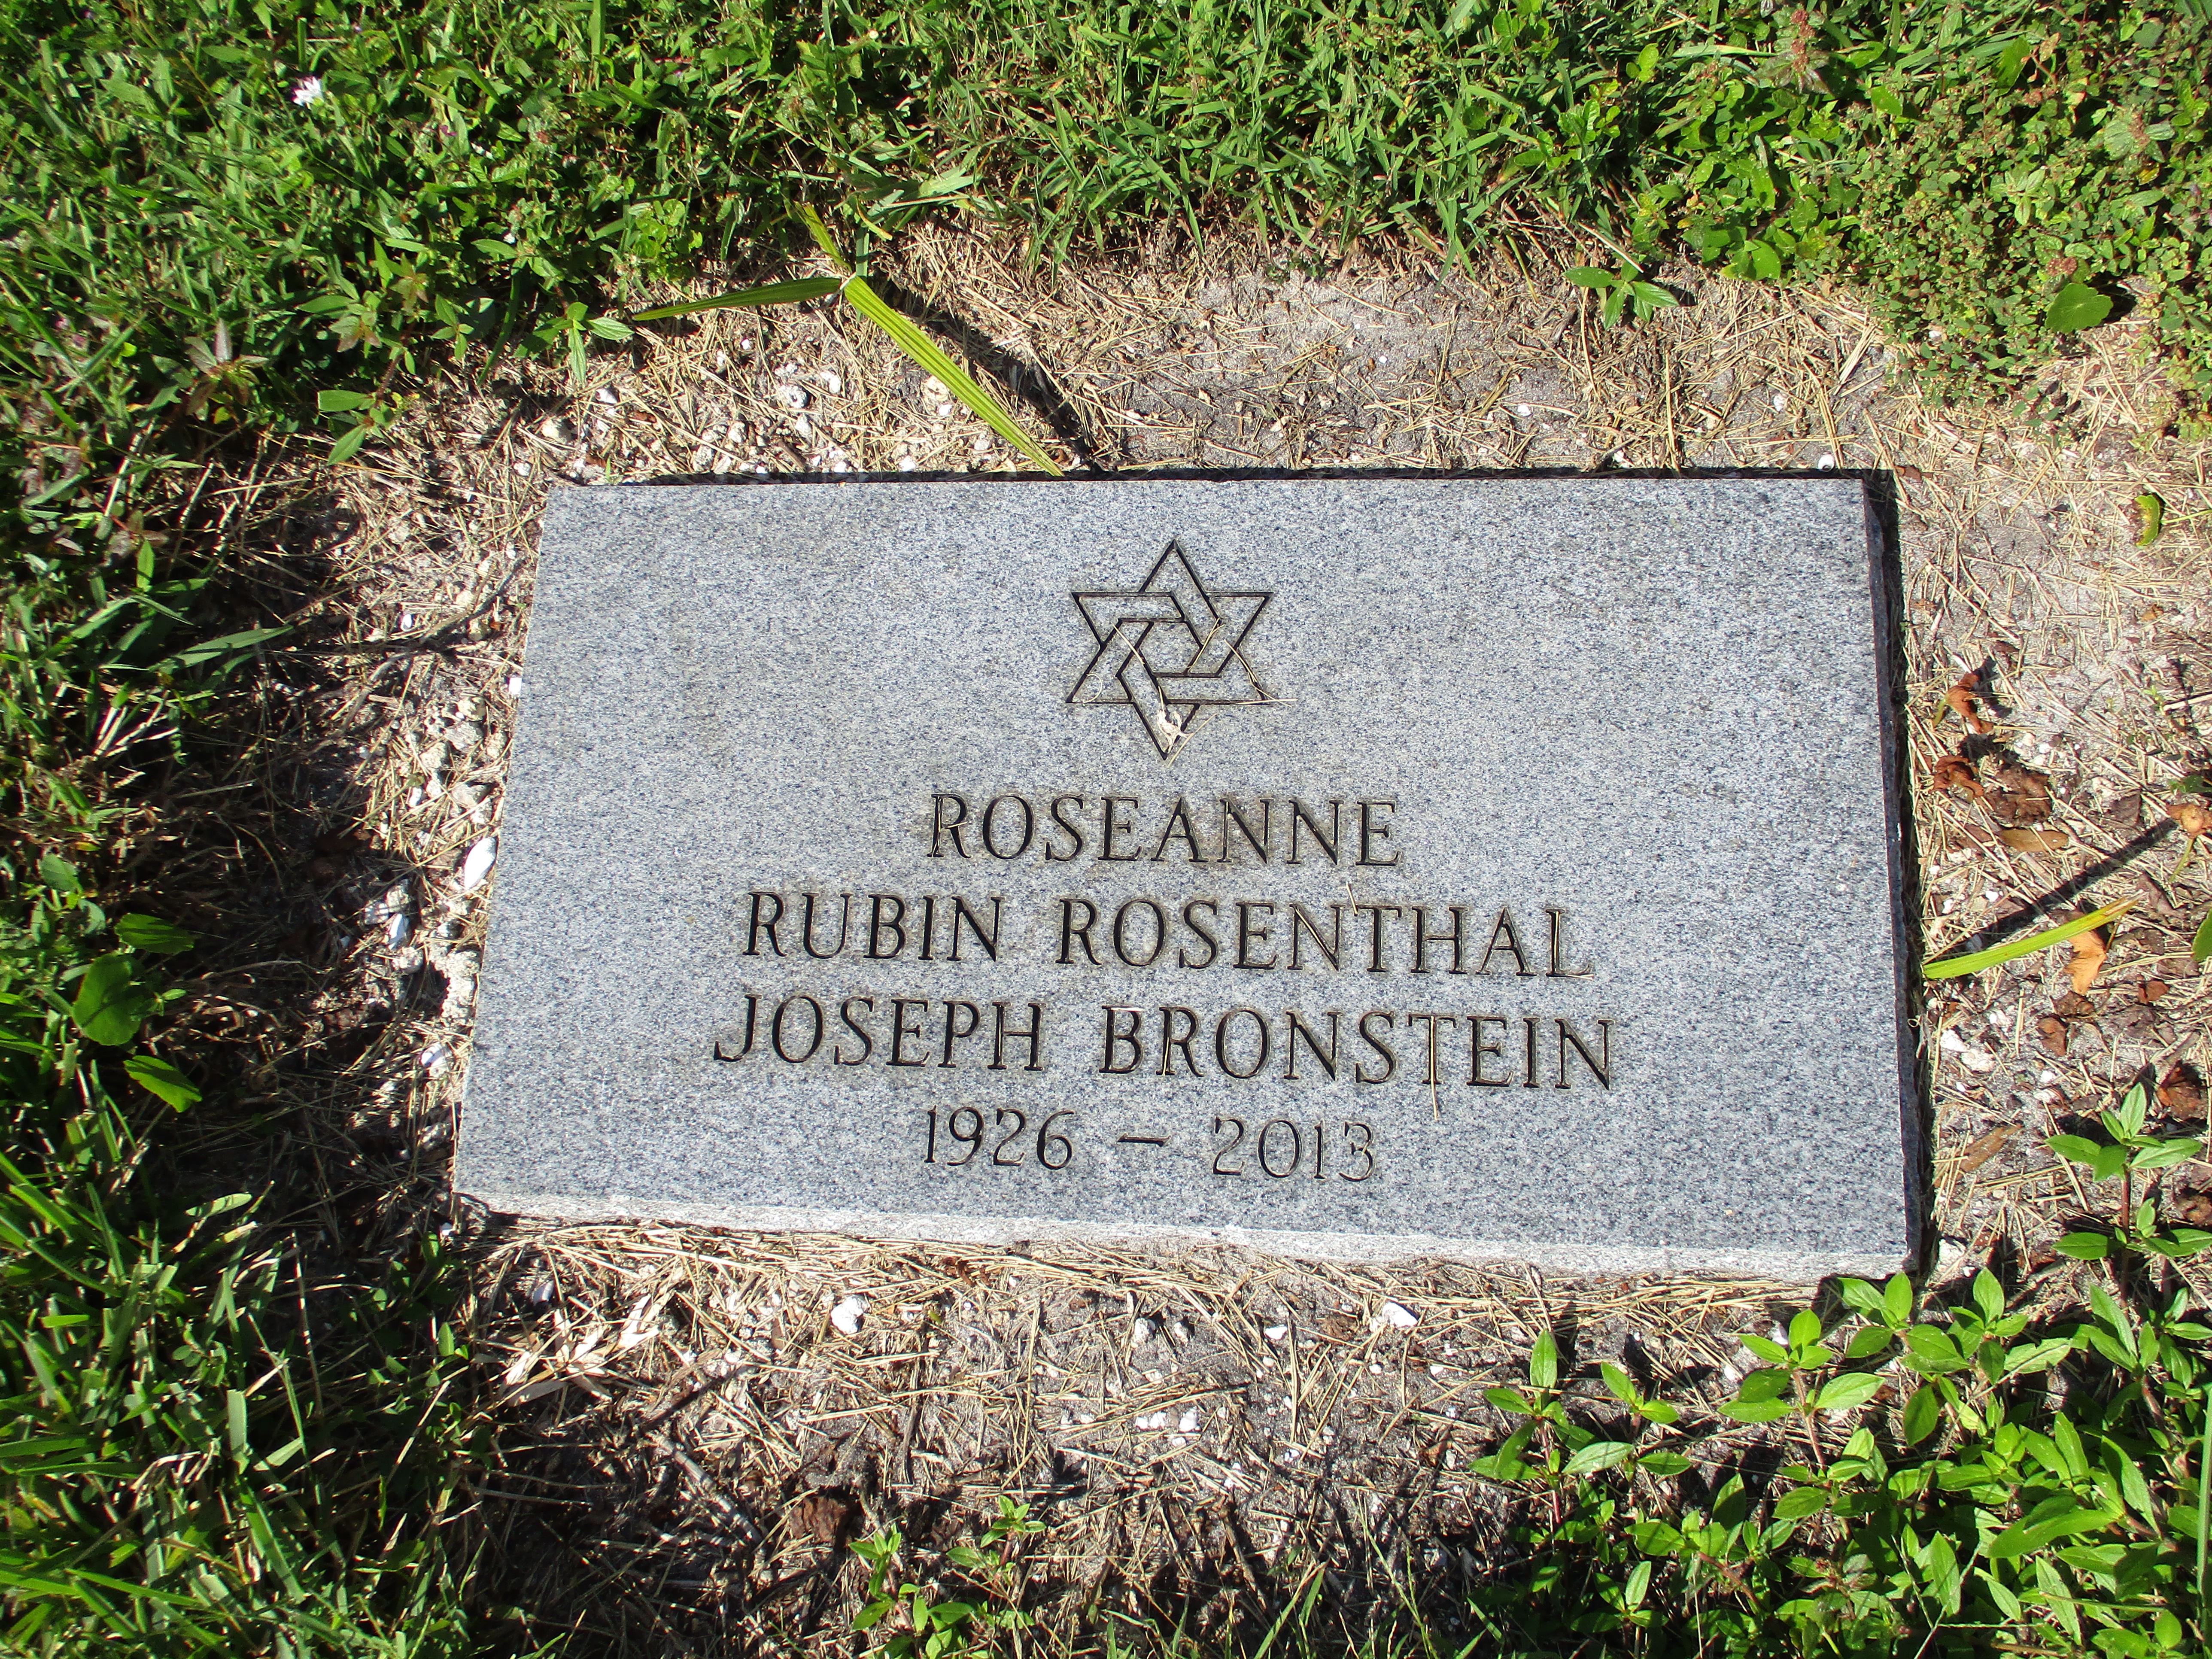 Roseanne Rubin Rosenthal Joseph Bronstein